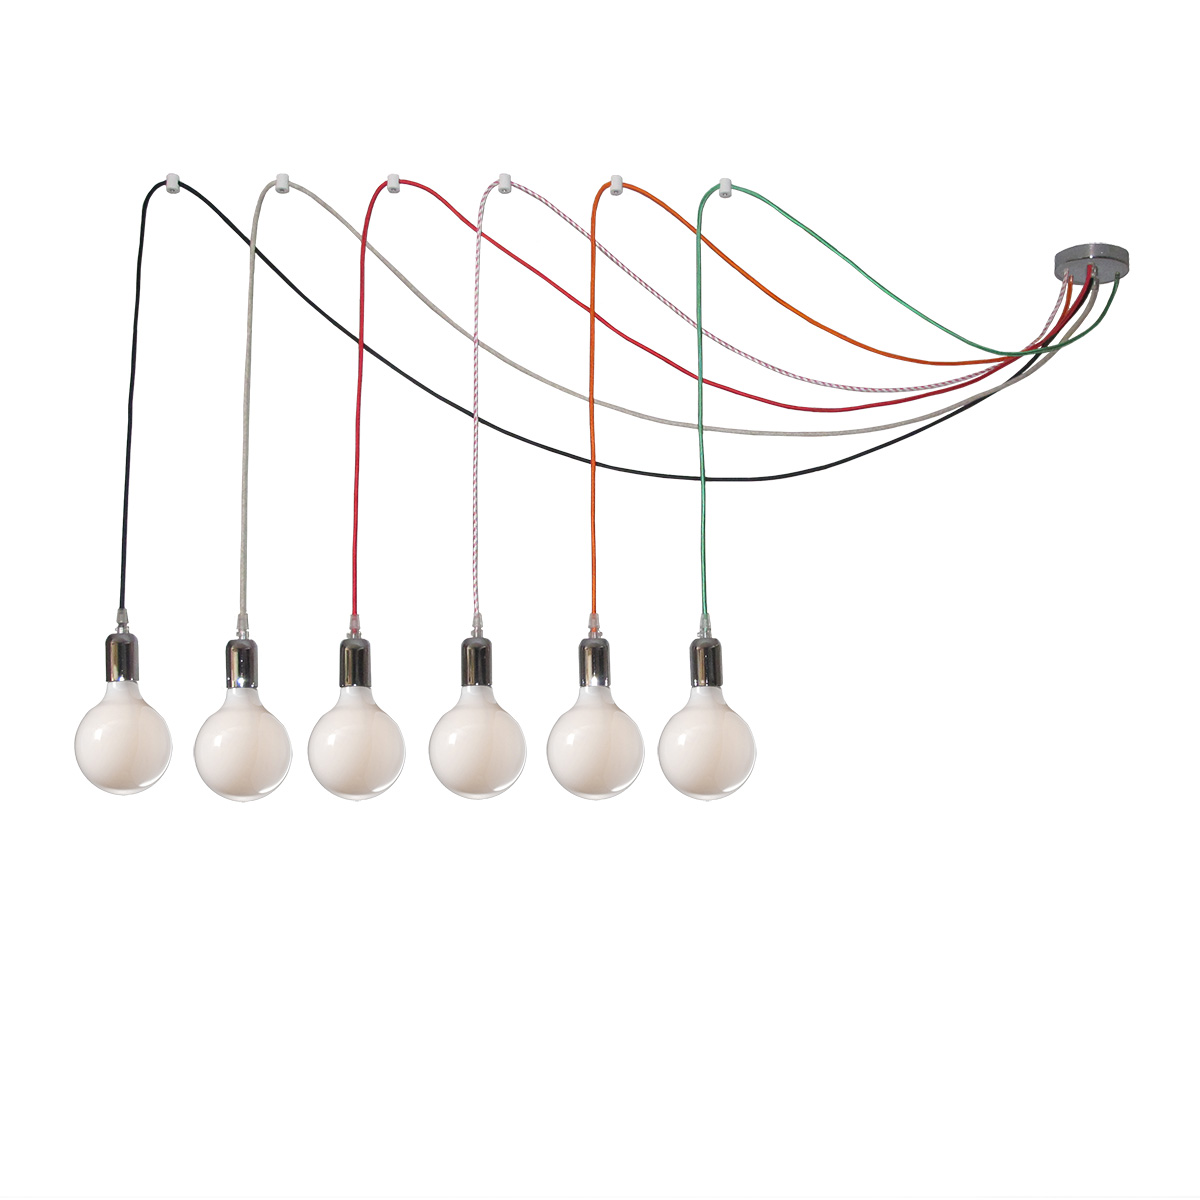 6φωτο φωτιστικό με χρωματιστά καλώδια ΚΑΛΩΔΙΑ 6-bulb chandelier with colorful cables